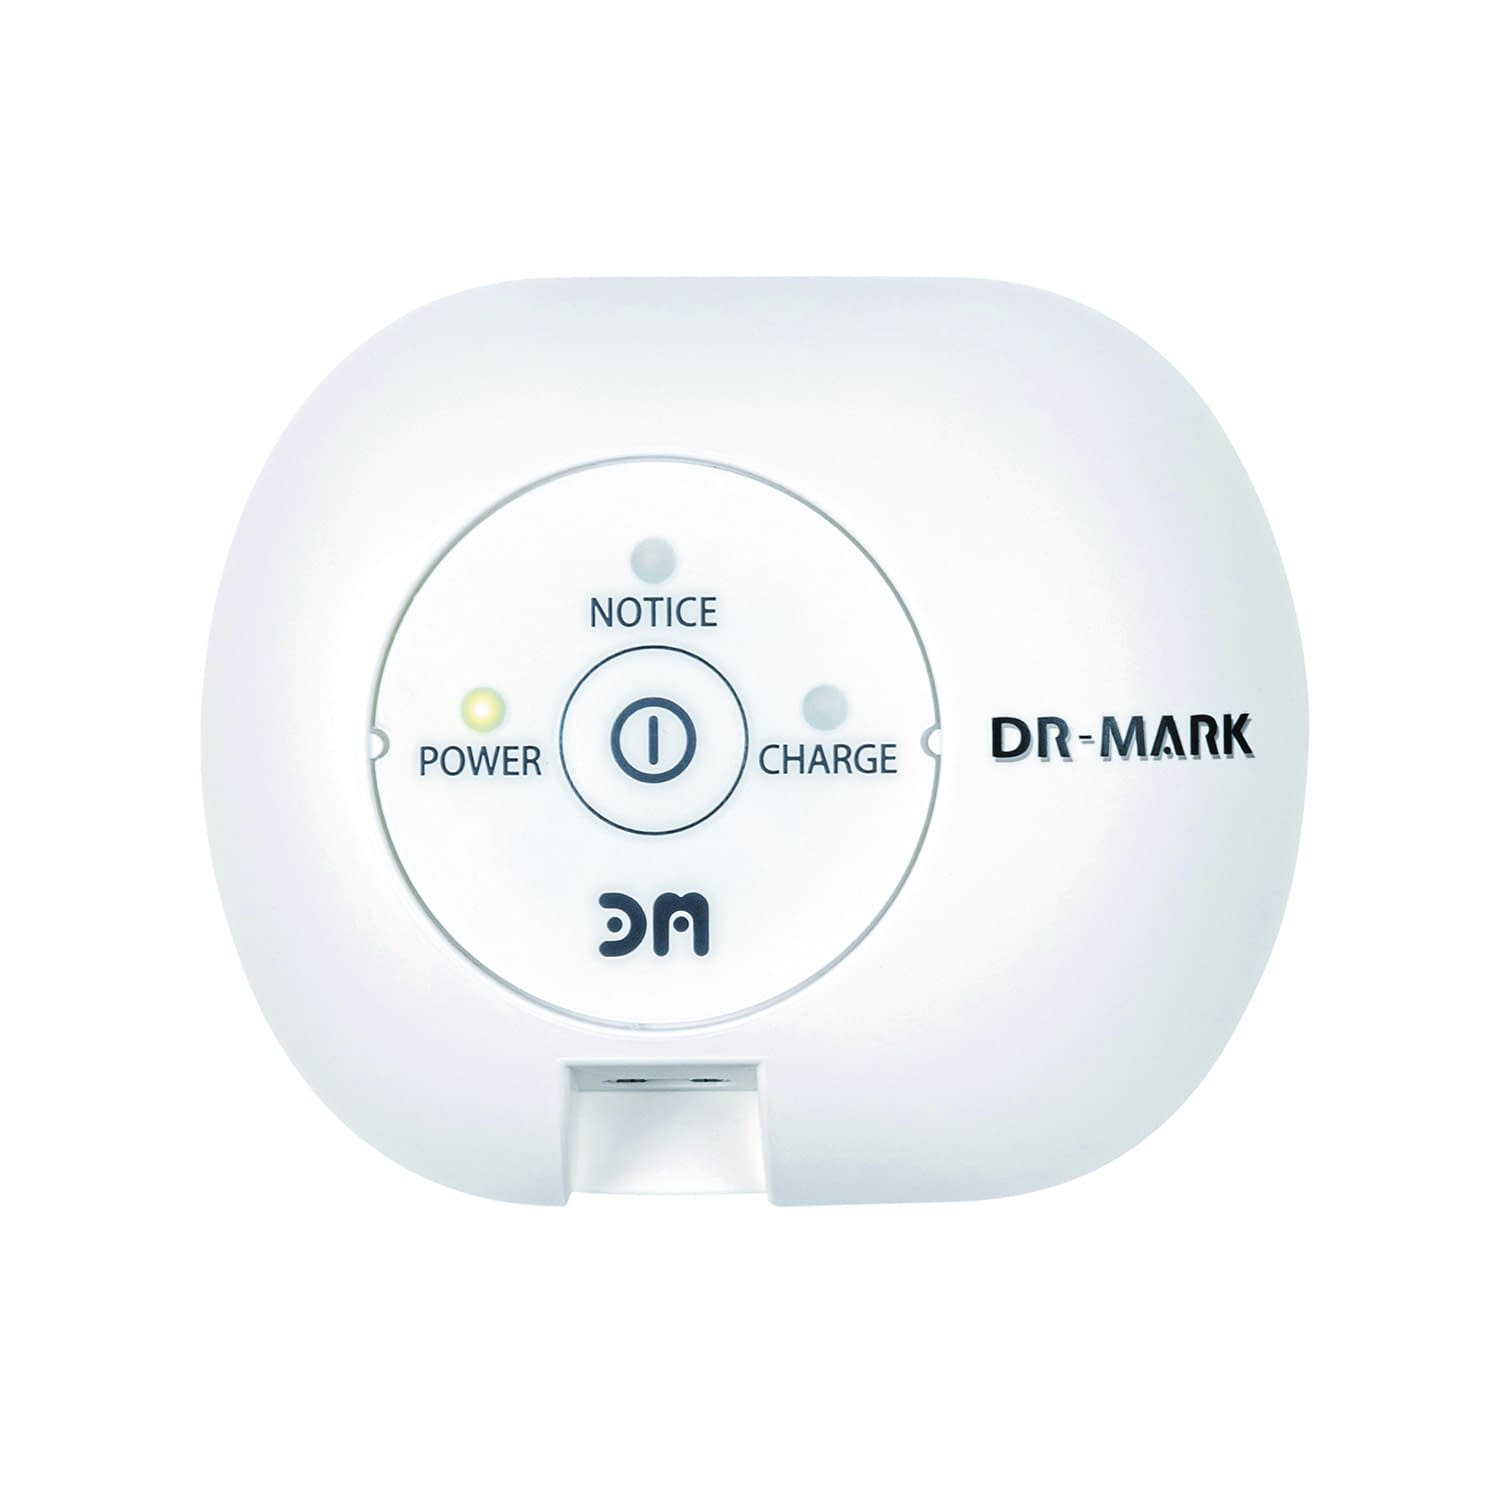 点滴管理ツール DR-MARK DRM-001A 点滴センサー 24-9963-00【マーク電子】(DRM-001A)(24-9963-00)